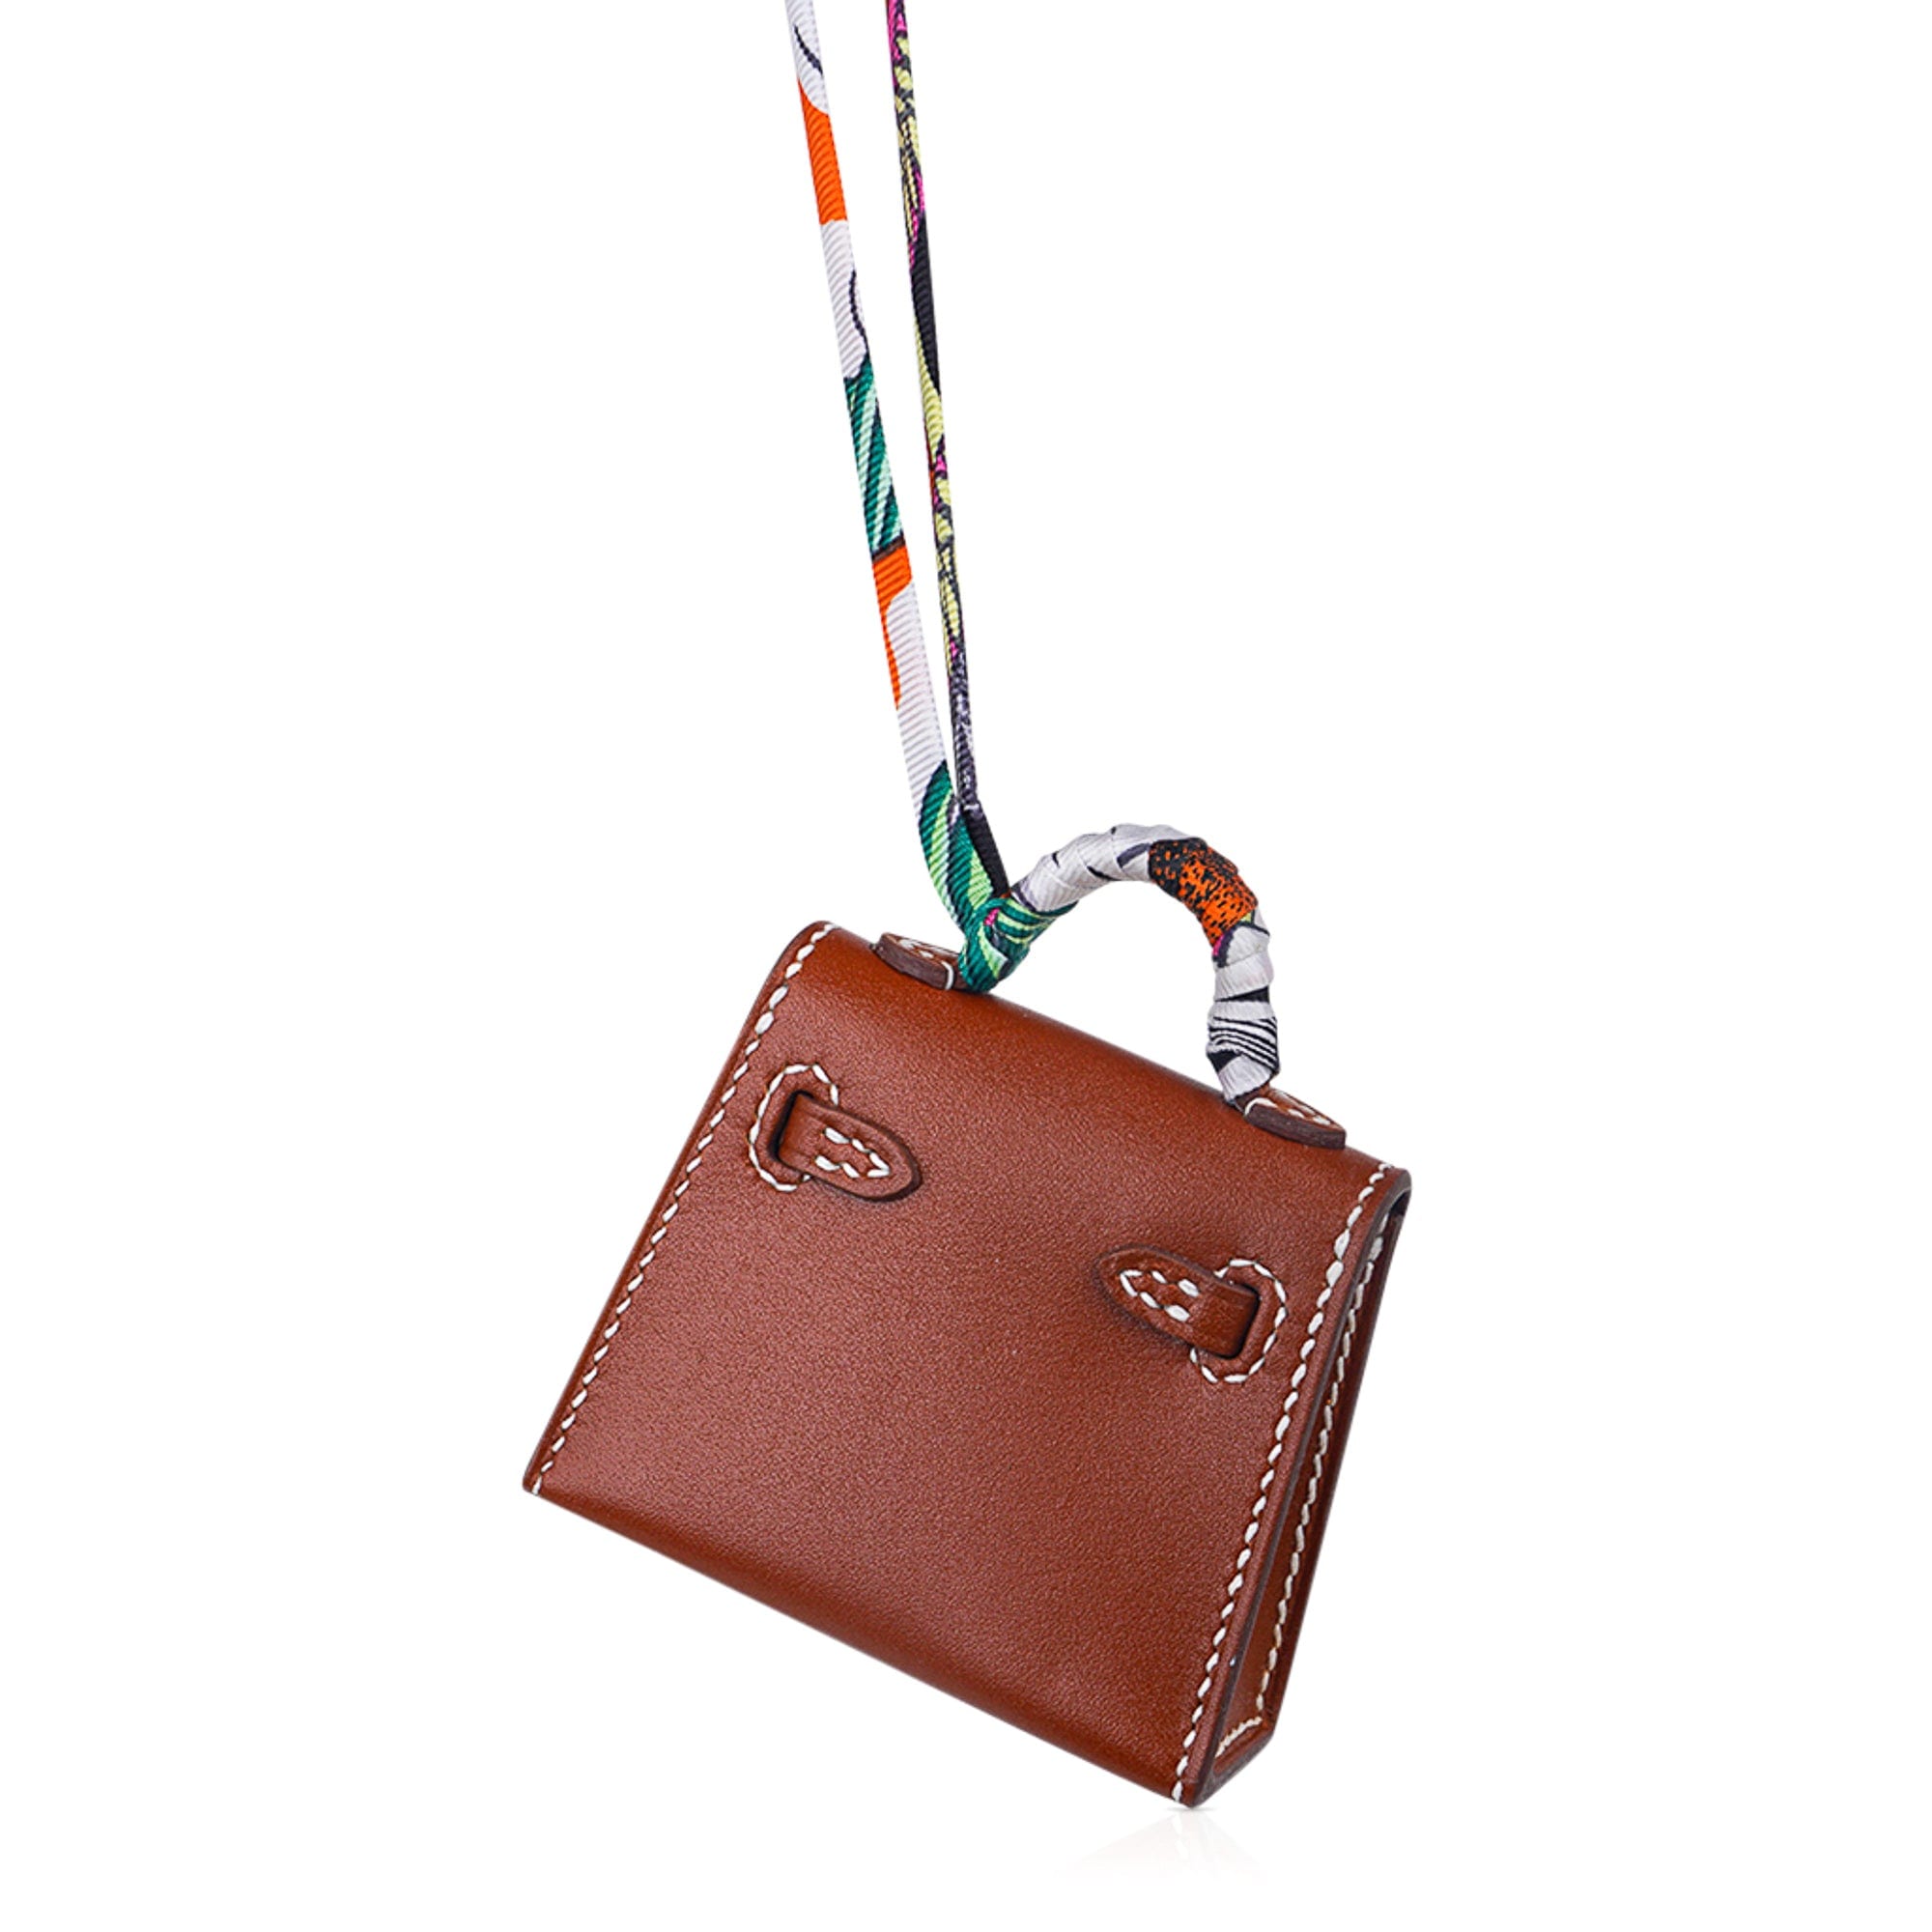 Hermes Bag Charms  Bag charm, Handbag charms, Leather craft